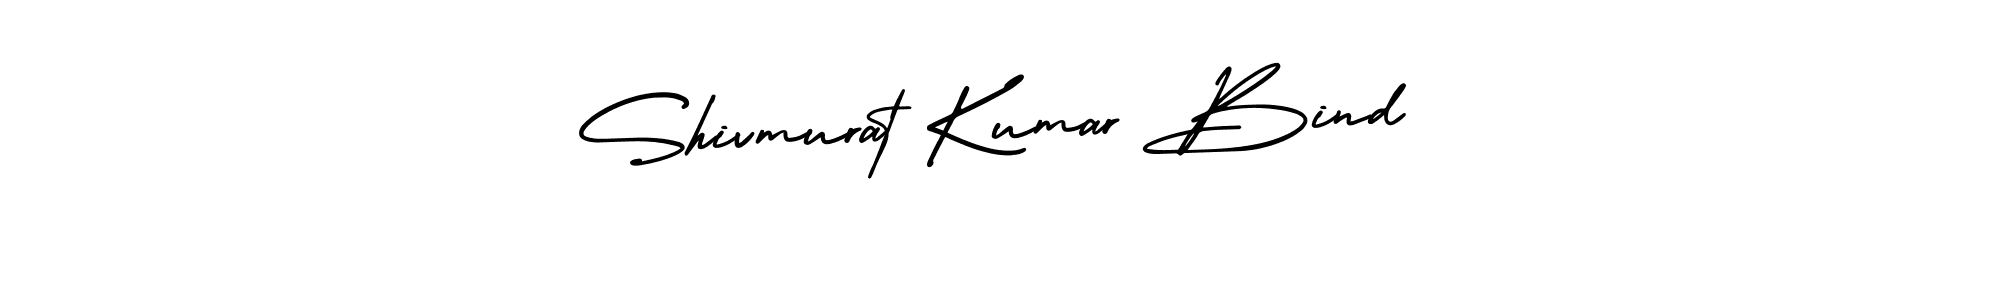 Shivmurat Kumar Bind stylish signature style. Best Handwritten Sign (AmerikaSignatureDemo-Regular) for my name. Handwritten Signature Collection Ideas for my name Shivmurat Kumar Bind. Shivmurat Kumar Bind signature style 3 images and pictures png